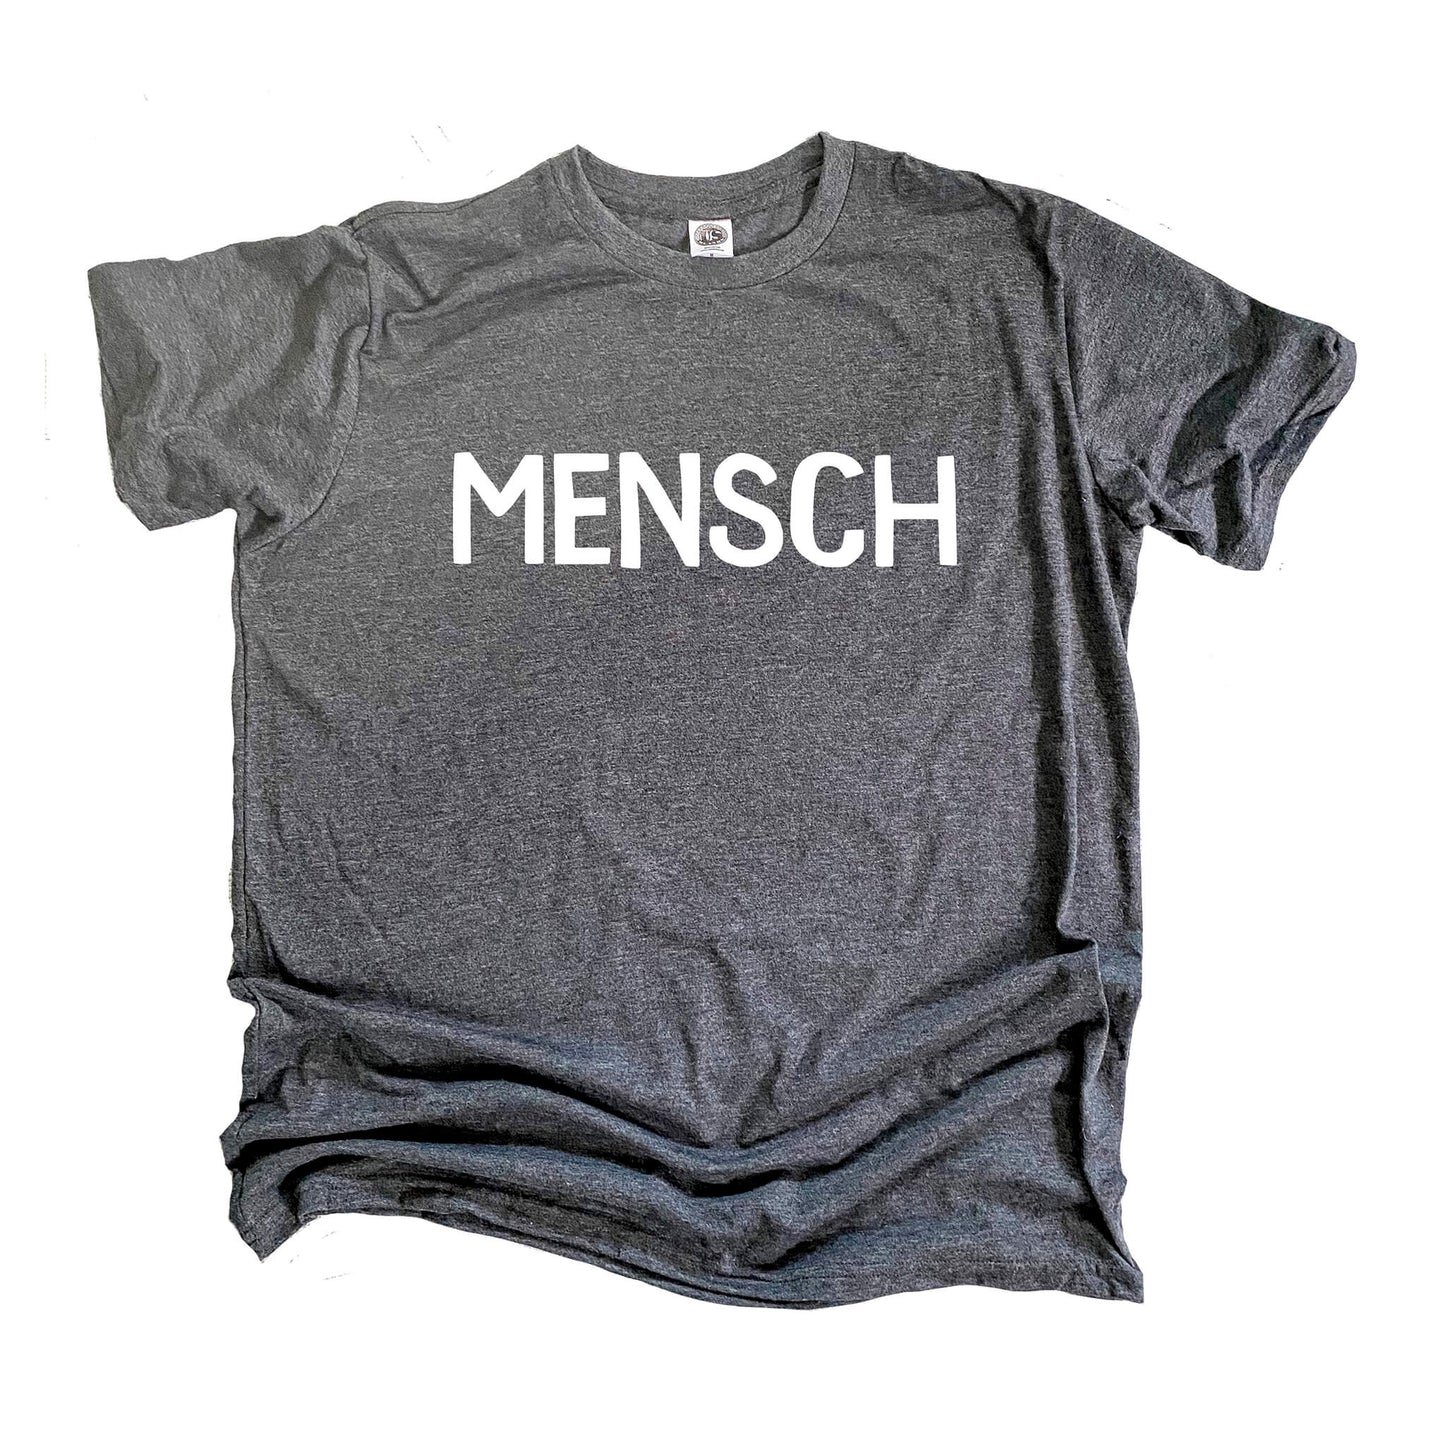 Mensch T-shirt